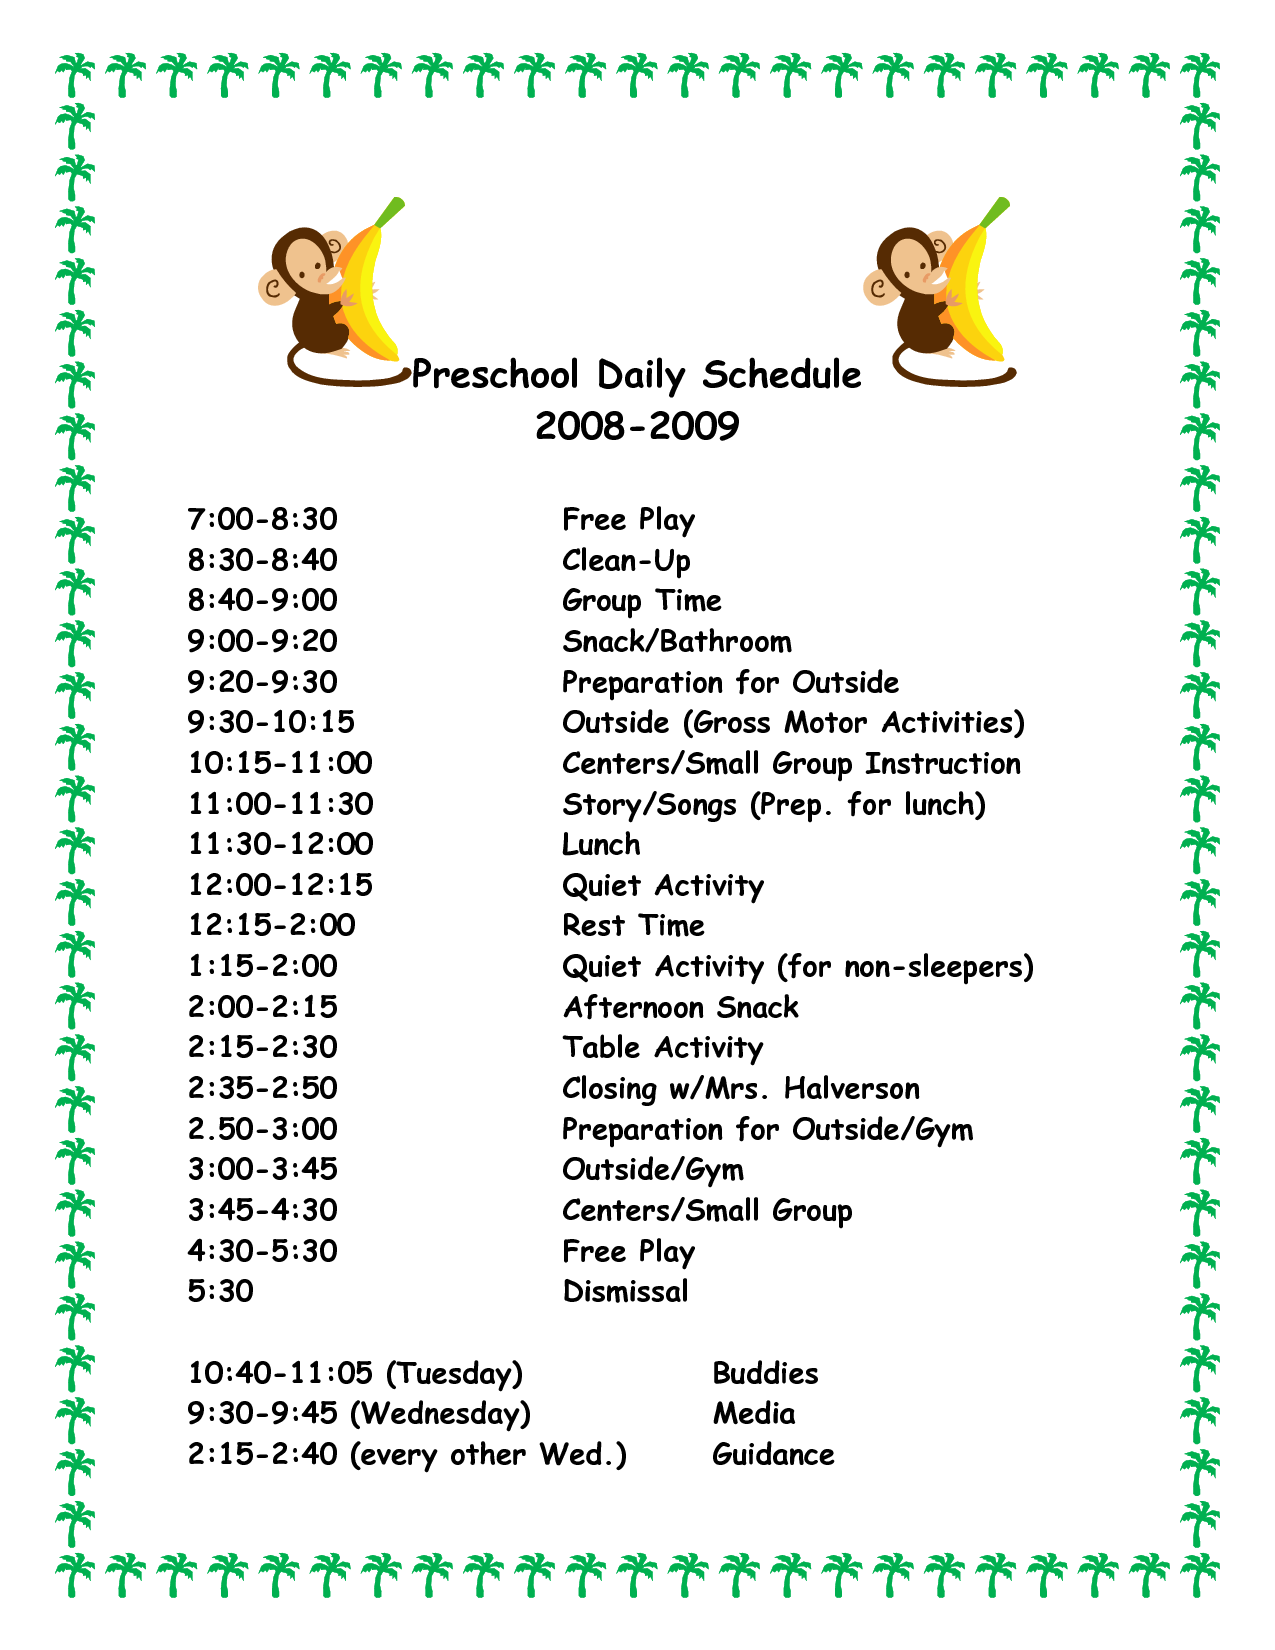 Daily Schedule For Preschoolers